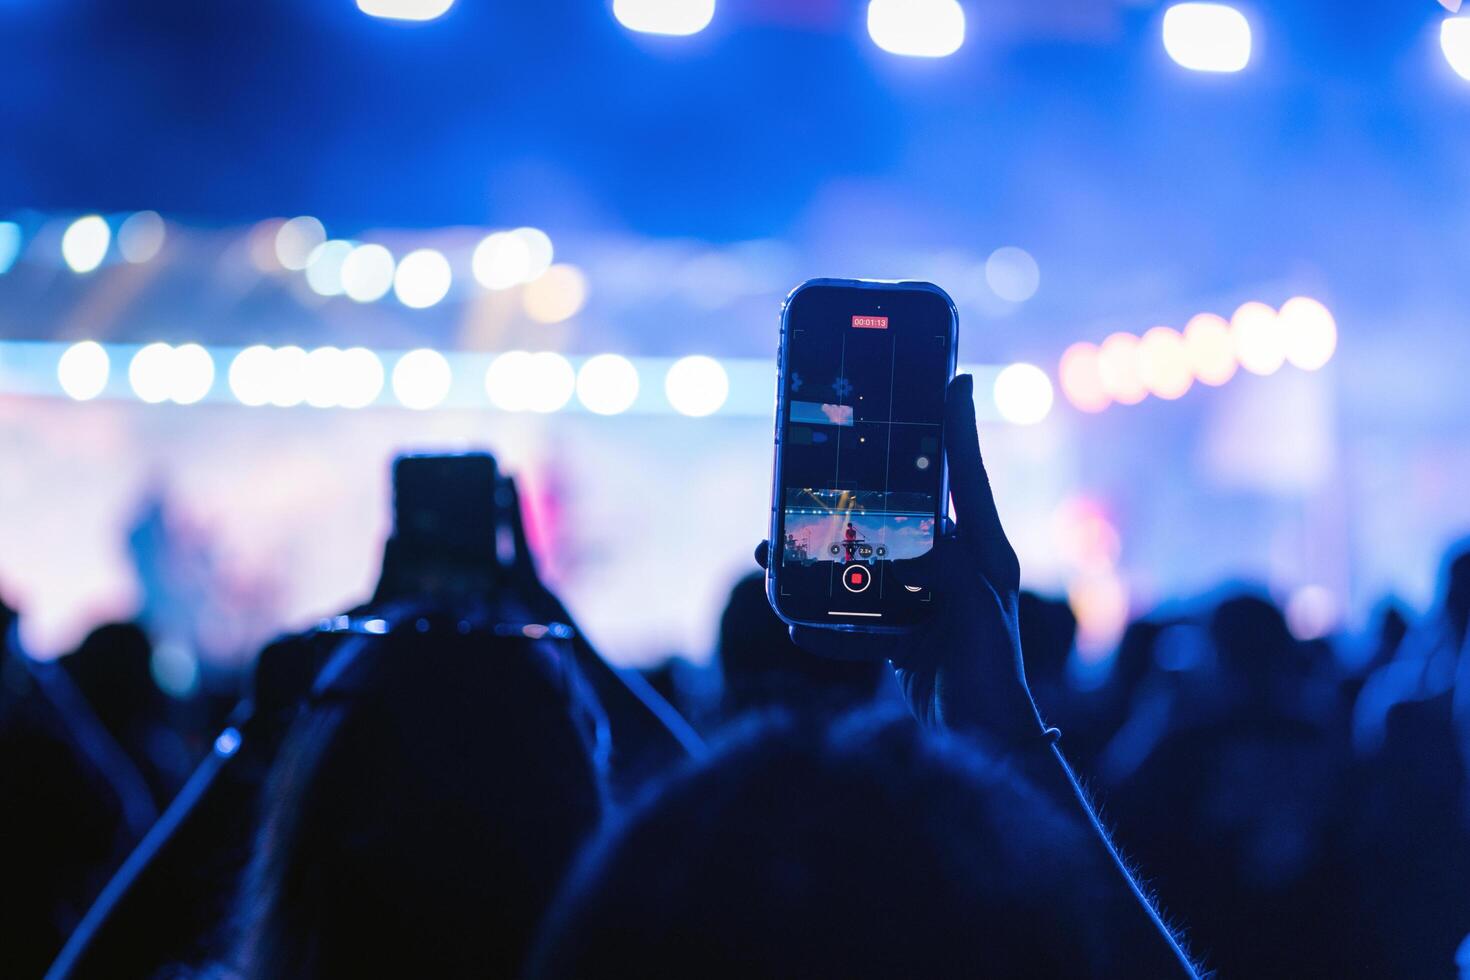 människor innehav smart telefon och inspelning och fotografering i musik festival konsert foto